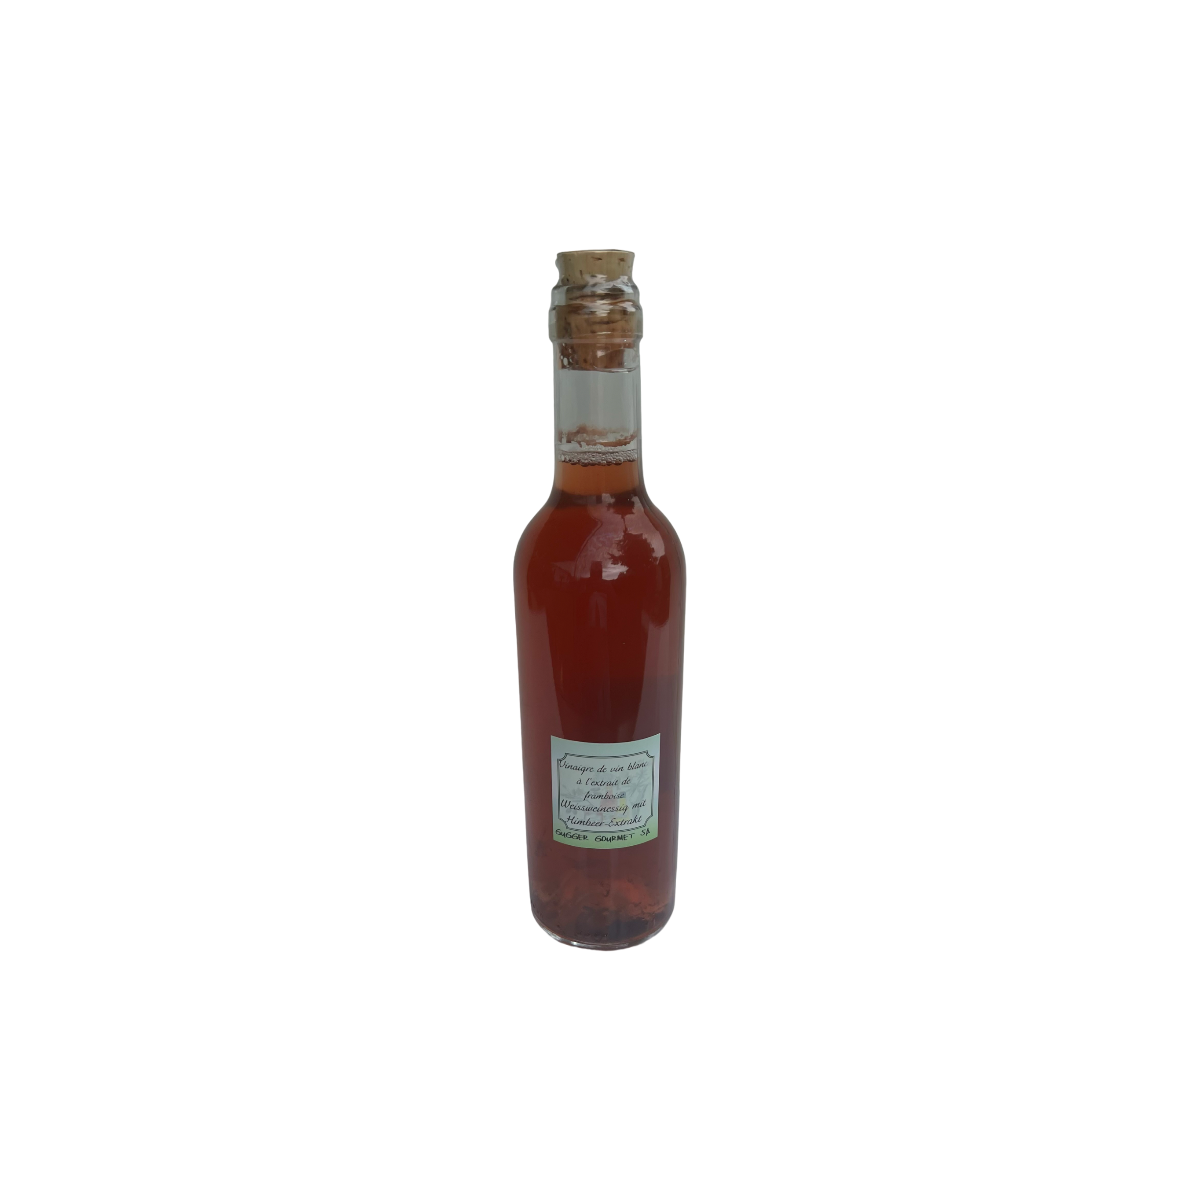 Raspberry Extract Vinegar